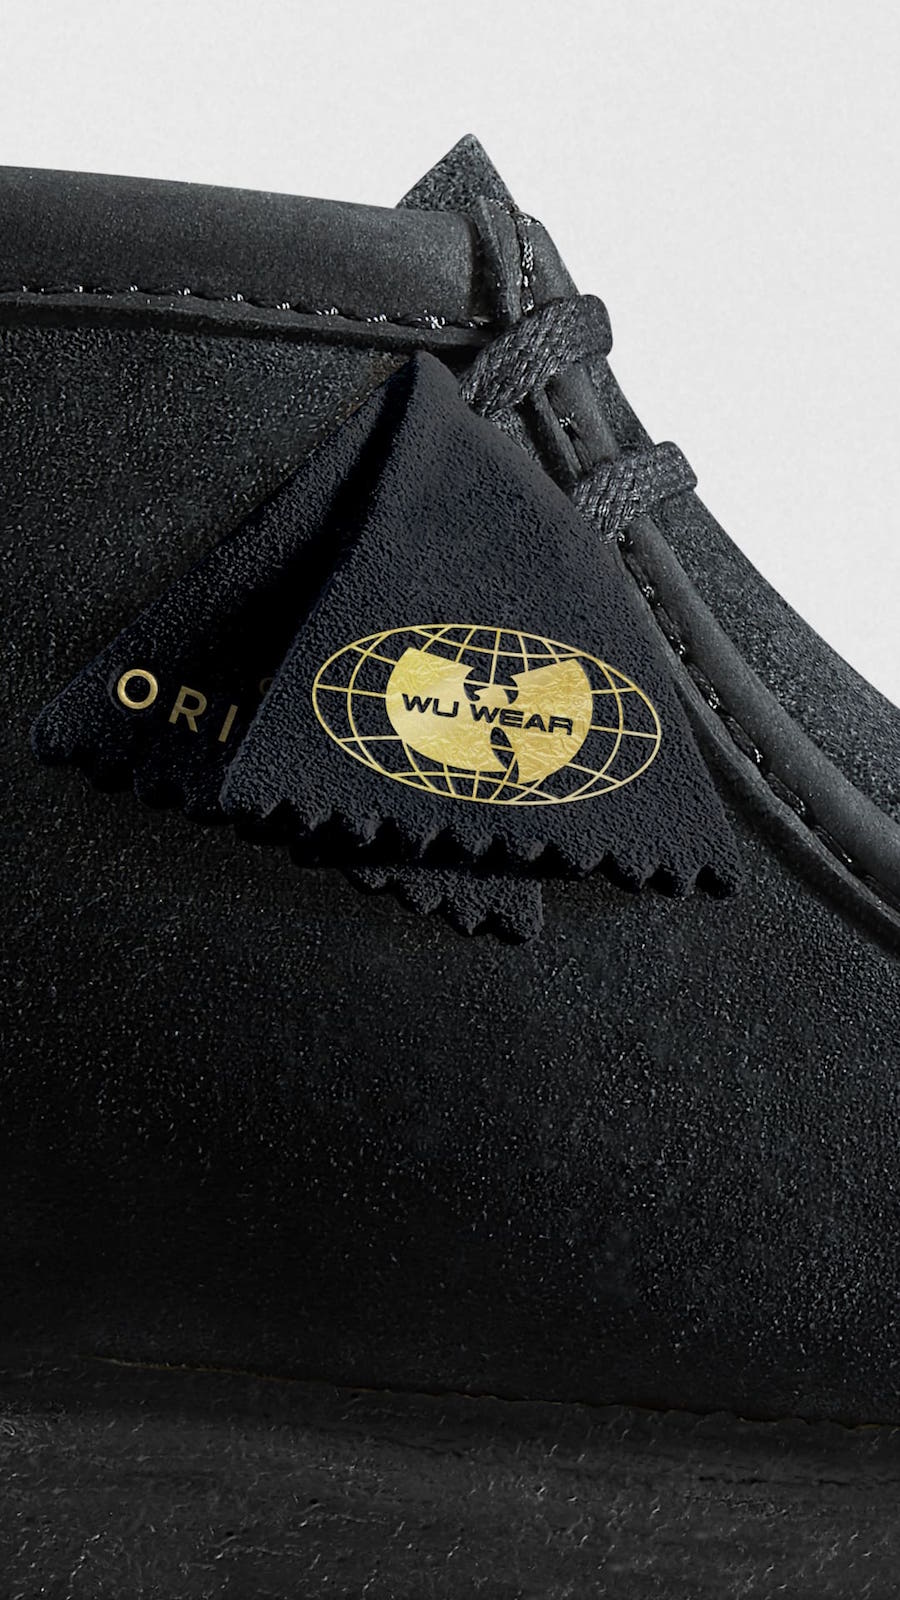 Wu-Tang Clan Clarks Wallabee Release Date - Sneaker Bar Detroit